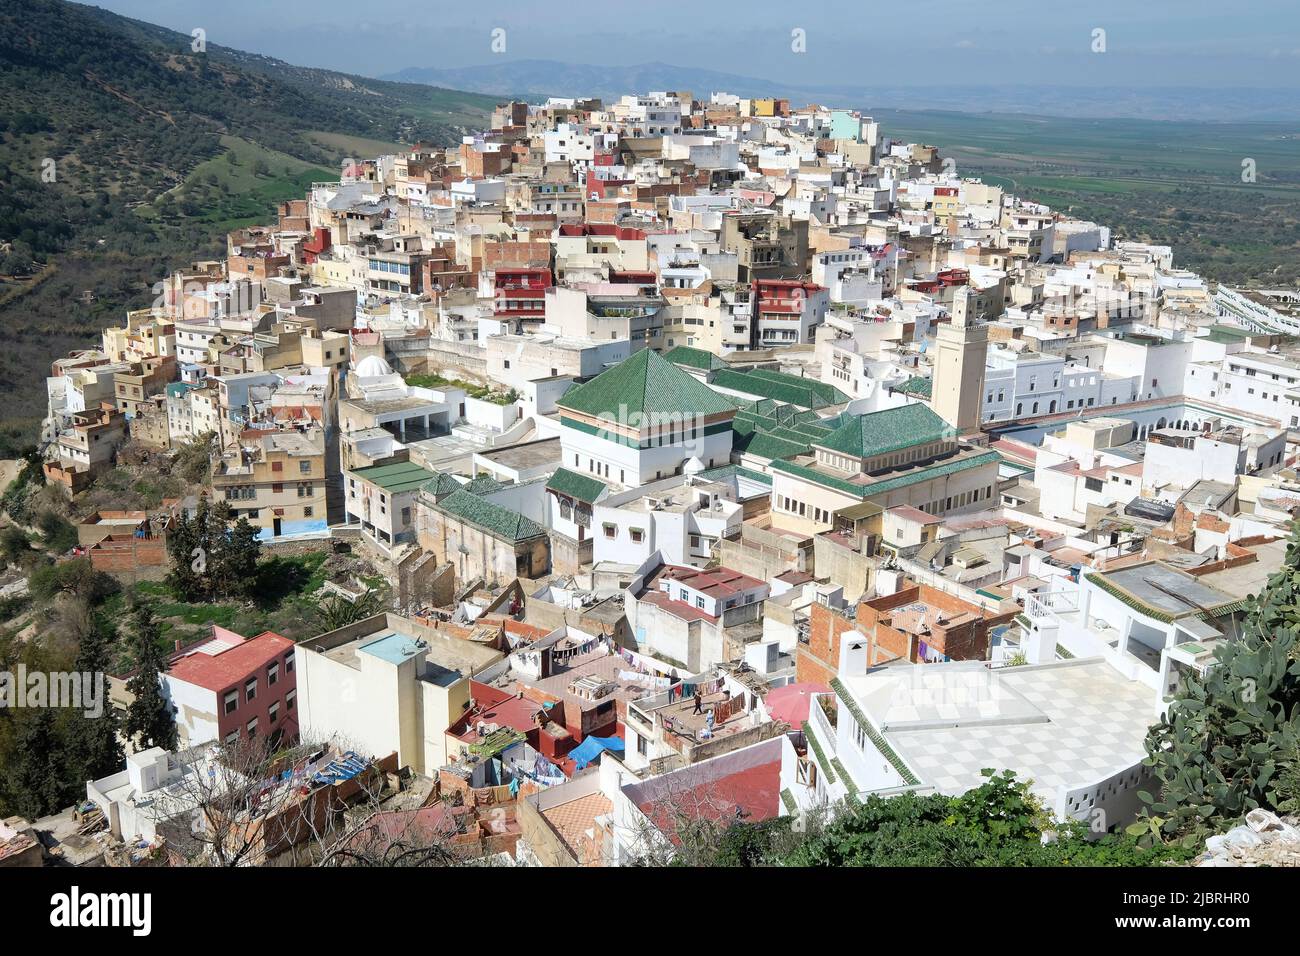 Vue sur les toits de tuiles vertes de la ville sainte de Moulay Idris, au Maroc, y compris le tombeau et Zawiya de Moulay Idriss, Moyen Atlas, Afrique du Nord. Banque D'Images